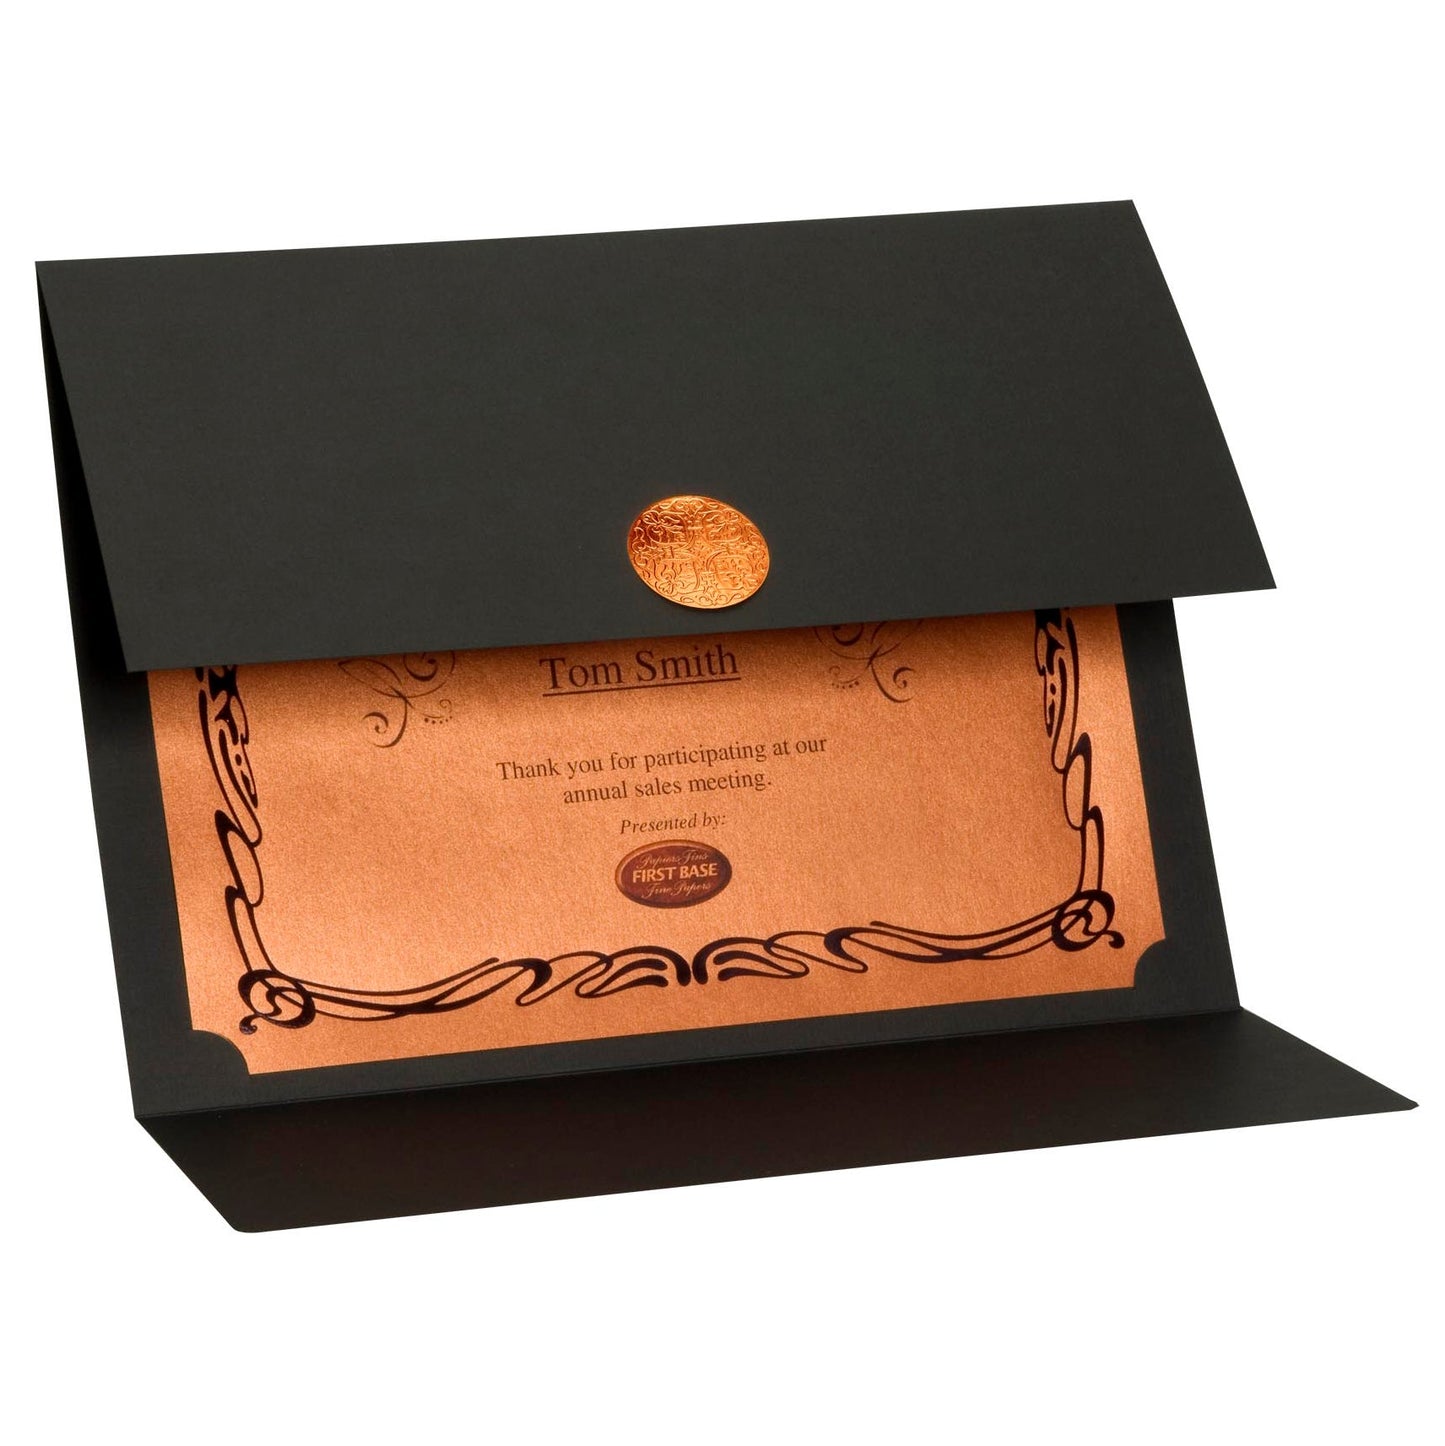 St. James® Elite™ Medallion Fold Certificate Holders, Black Linen with Copper Medallion, Pack of 5